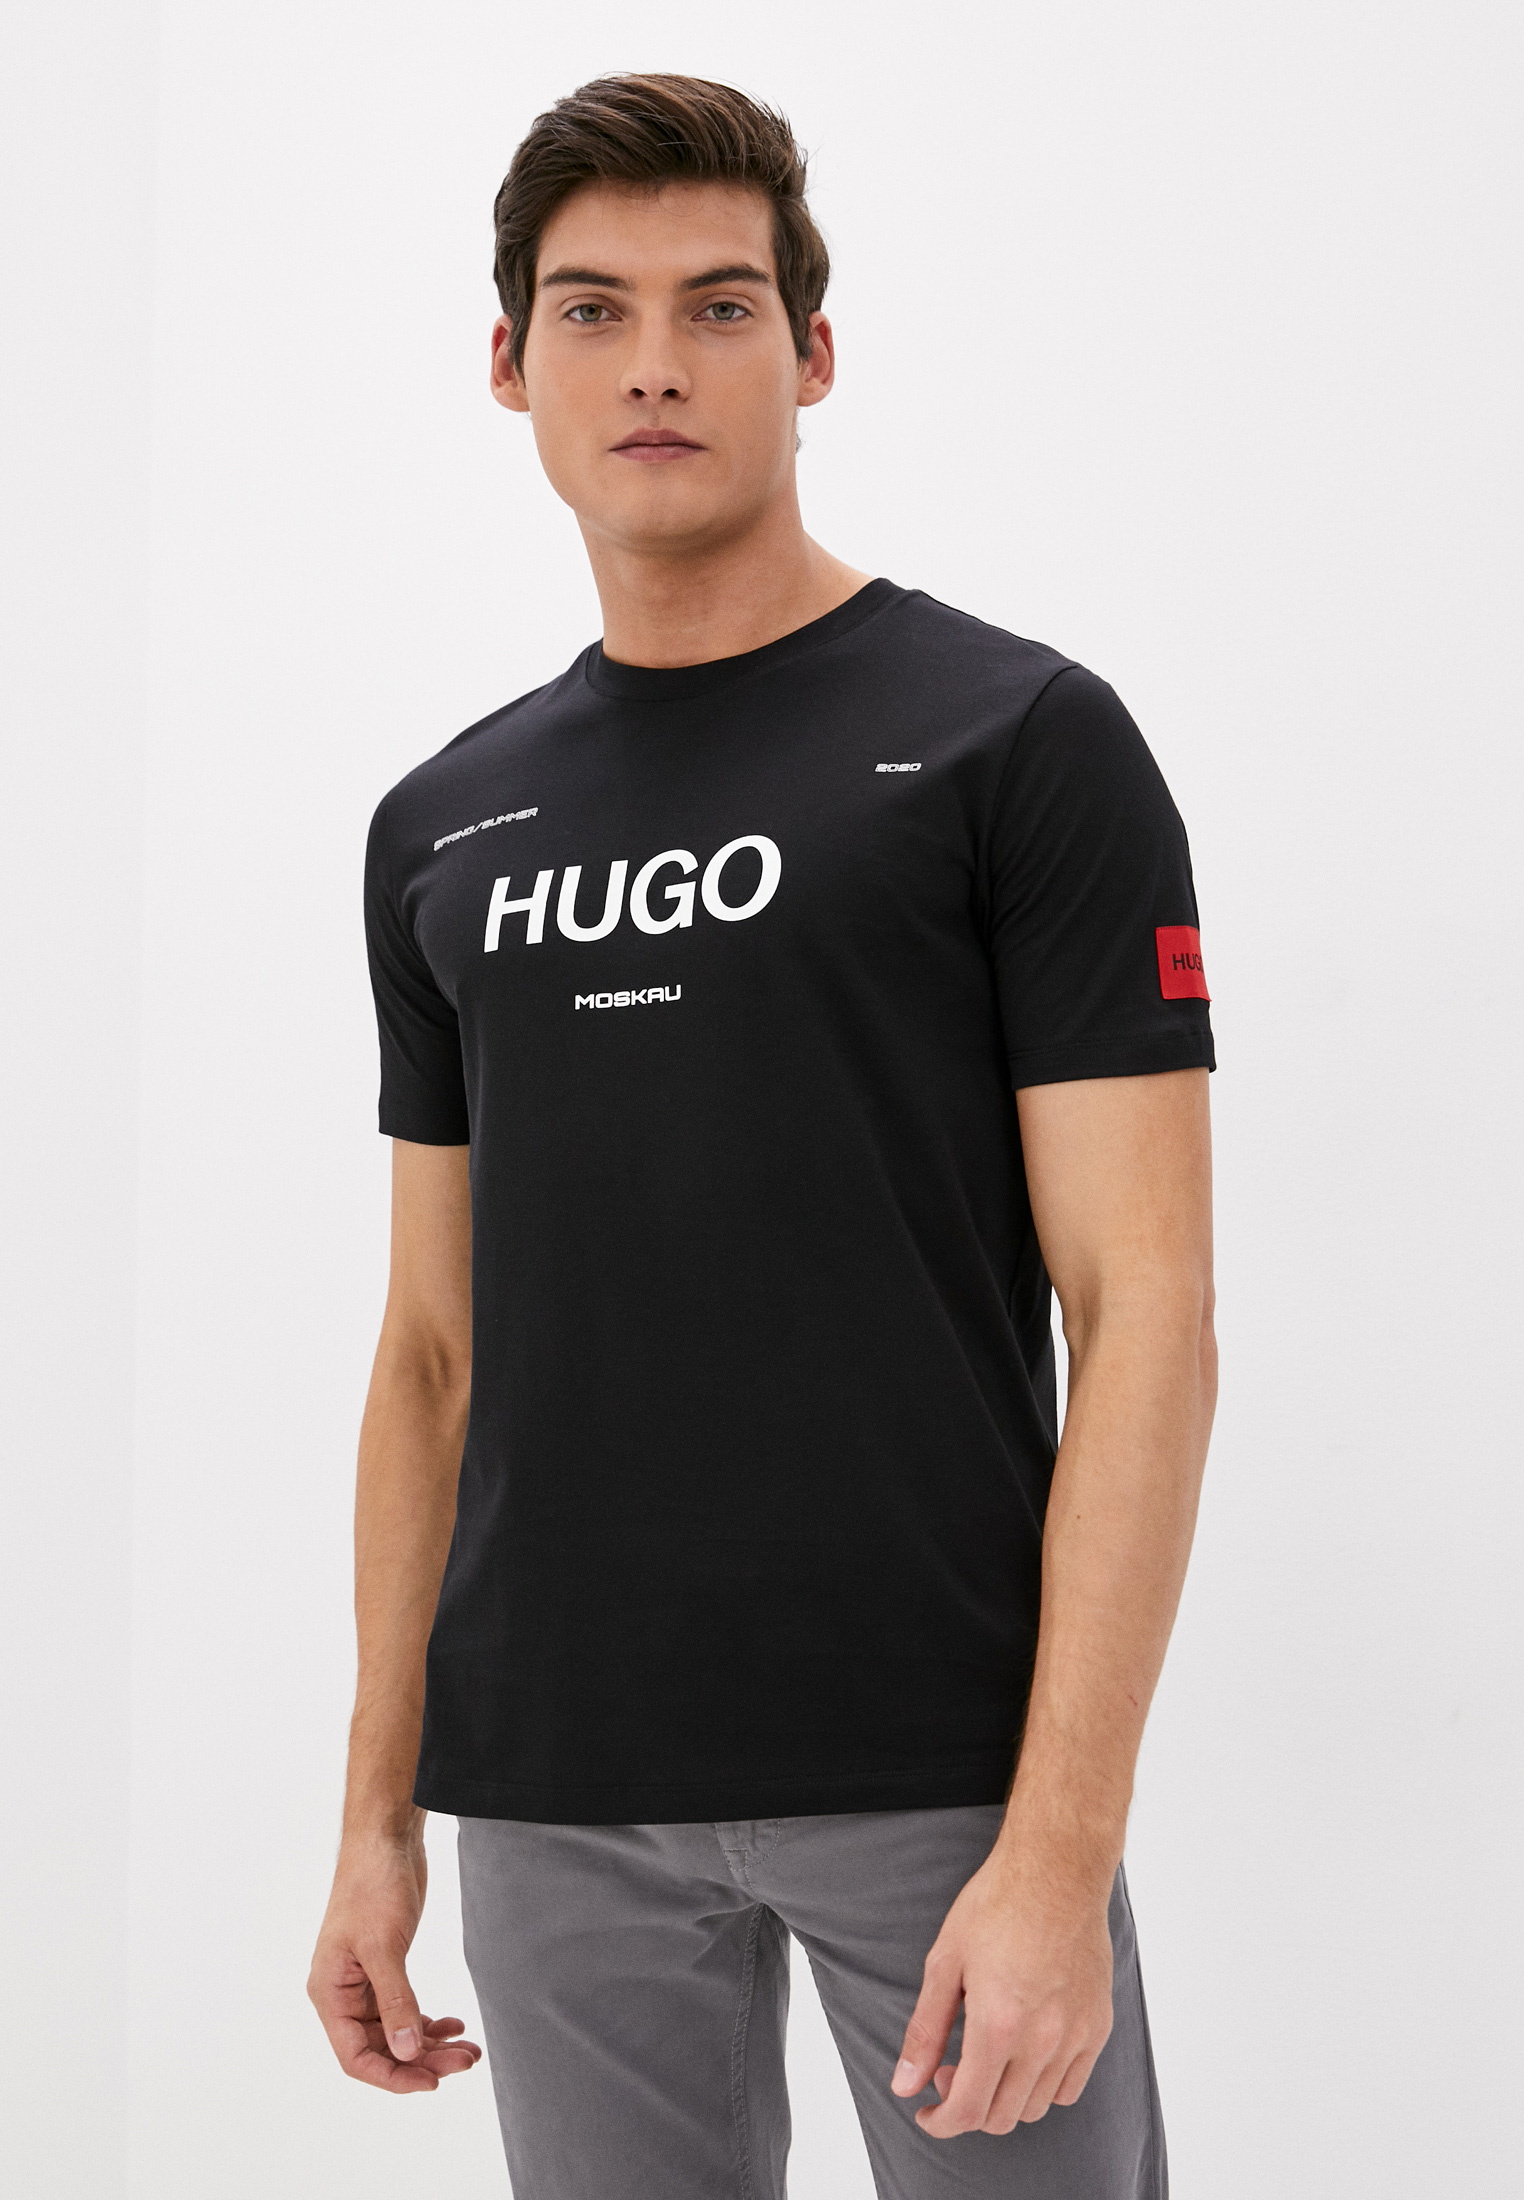 Купить футболку hugo. Футболка Hugo. Хуго футболка мужская. Футболка Хьюго босс мужская черная. Майка мужская Hugo.